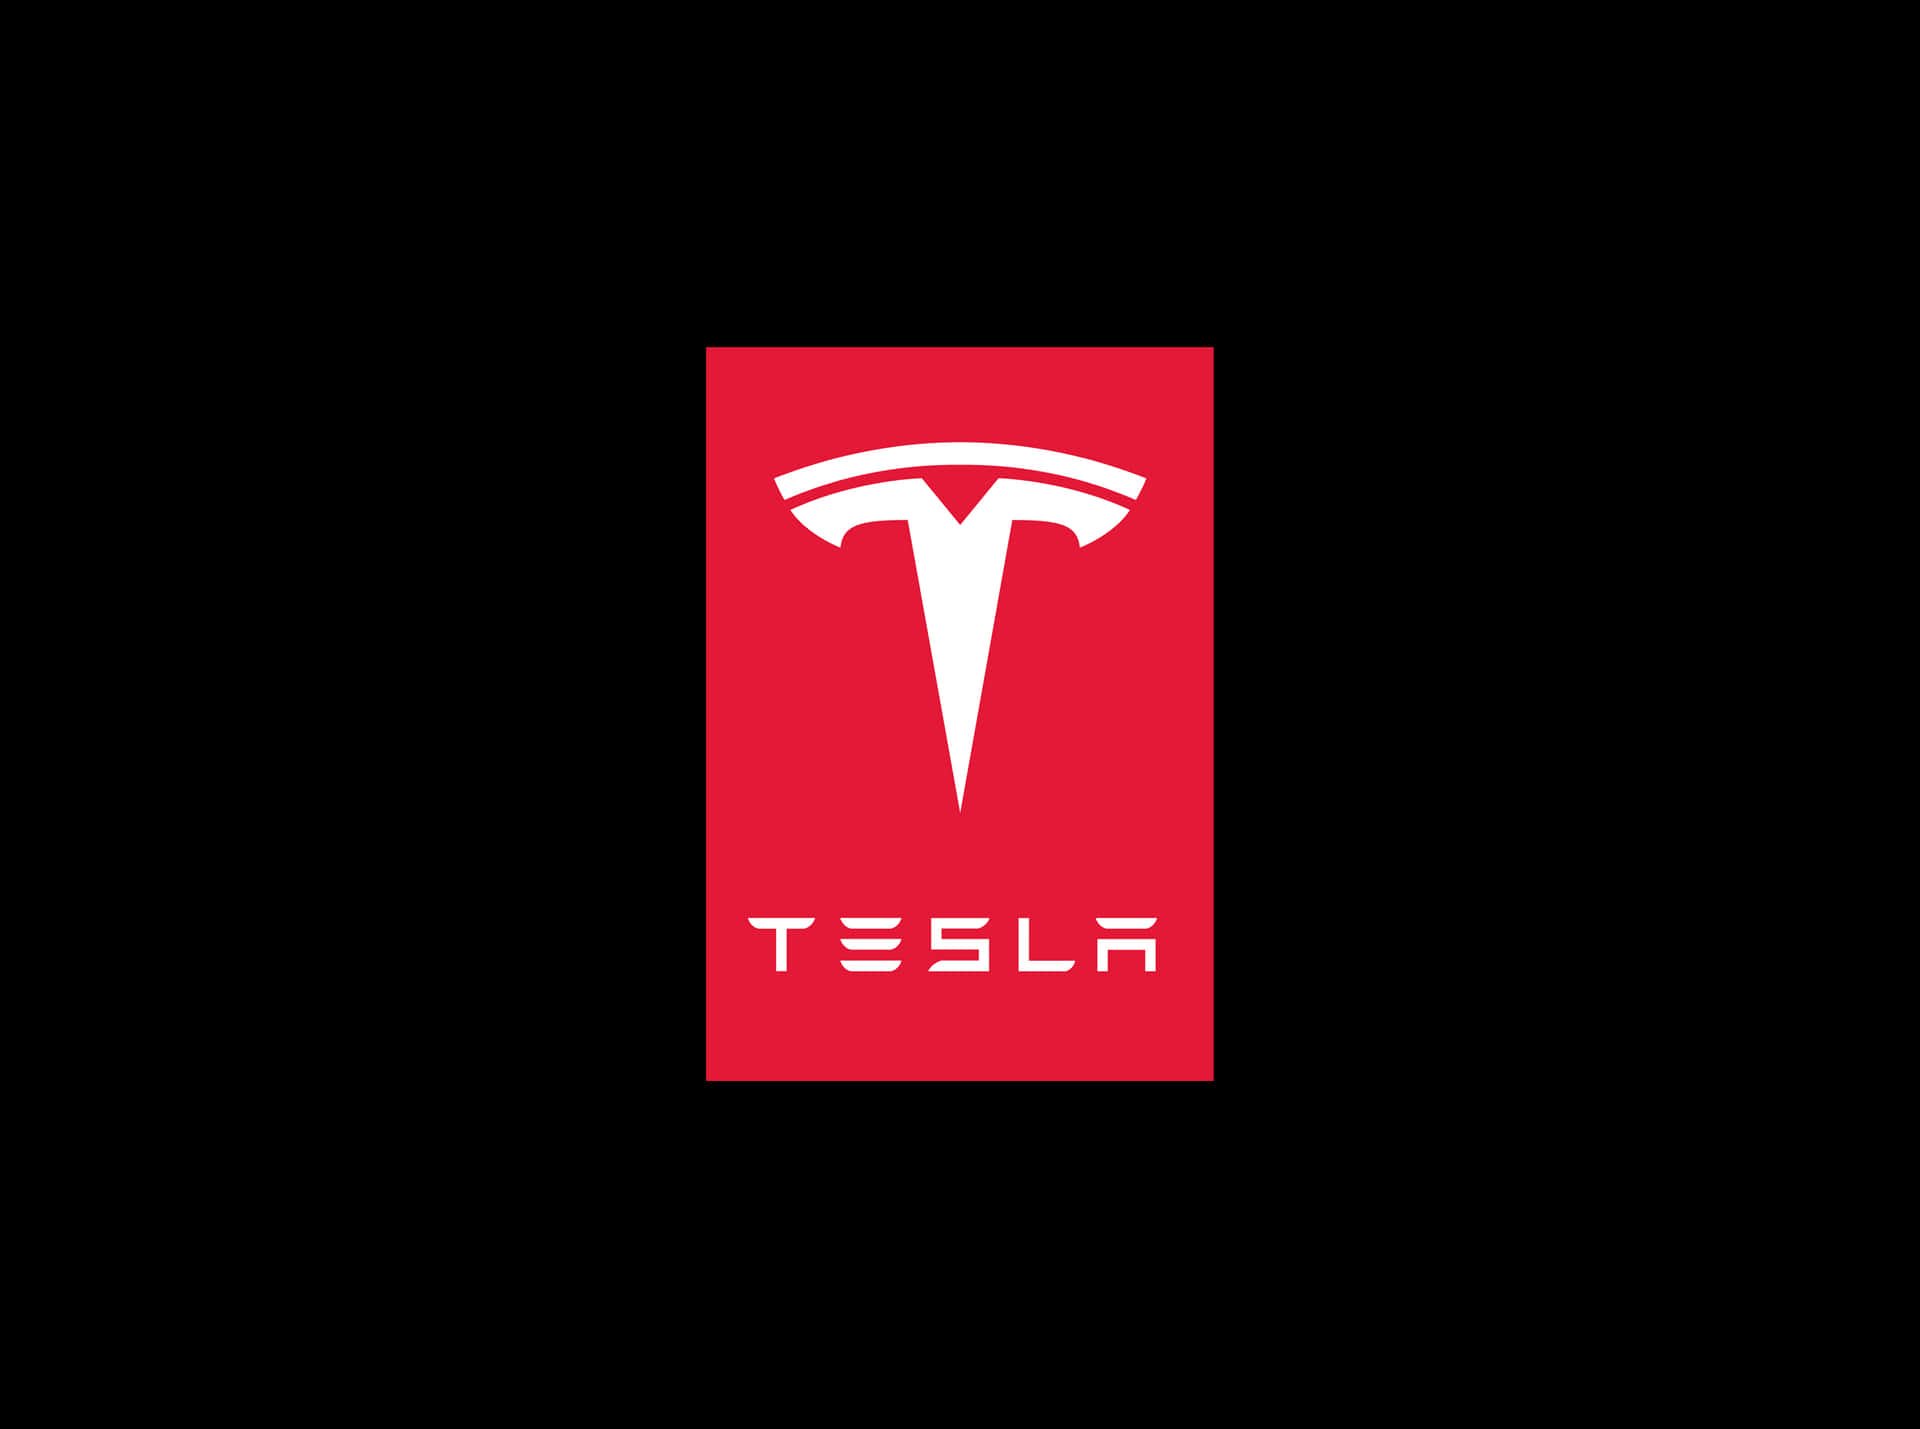 Tesla Logo 2268 X 1688 Wallpaper